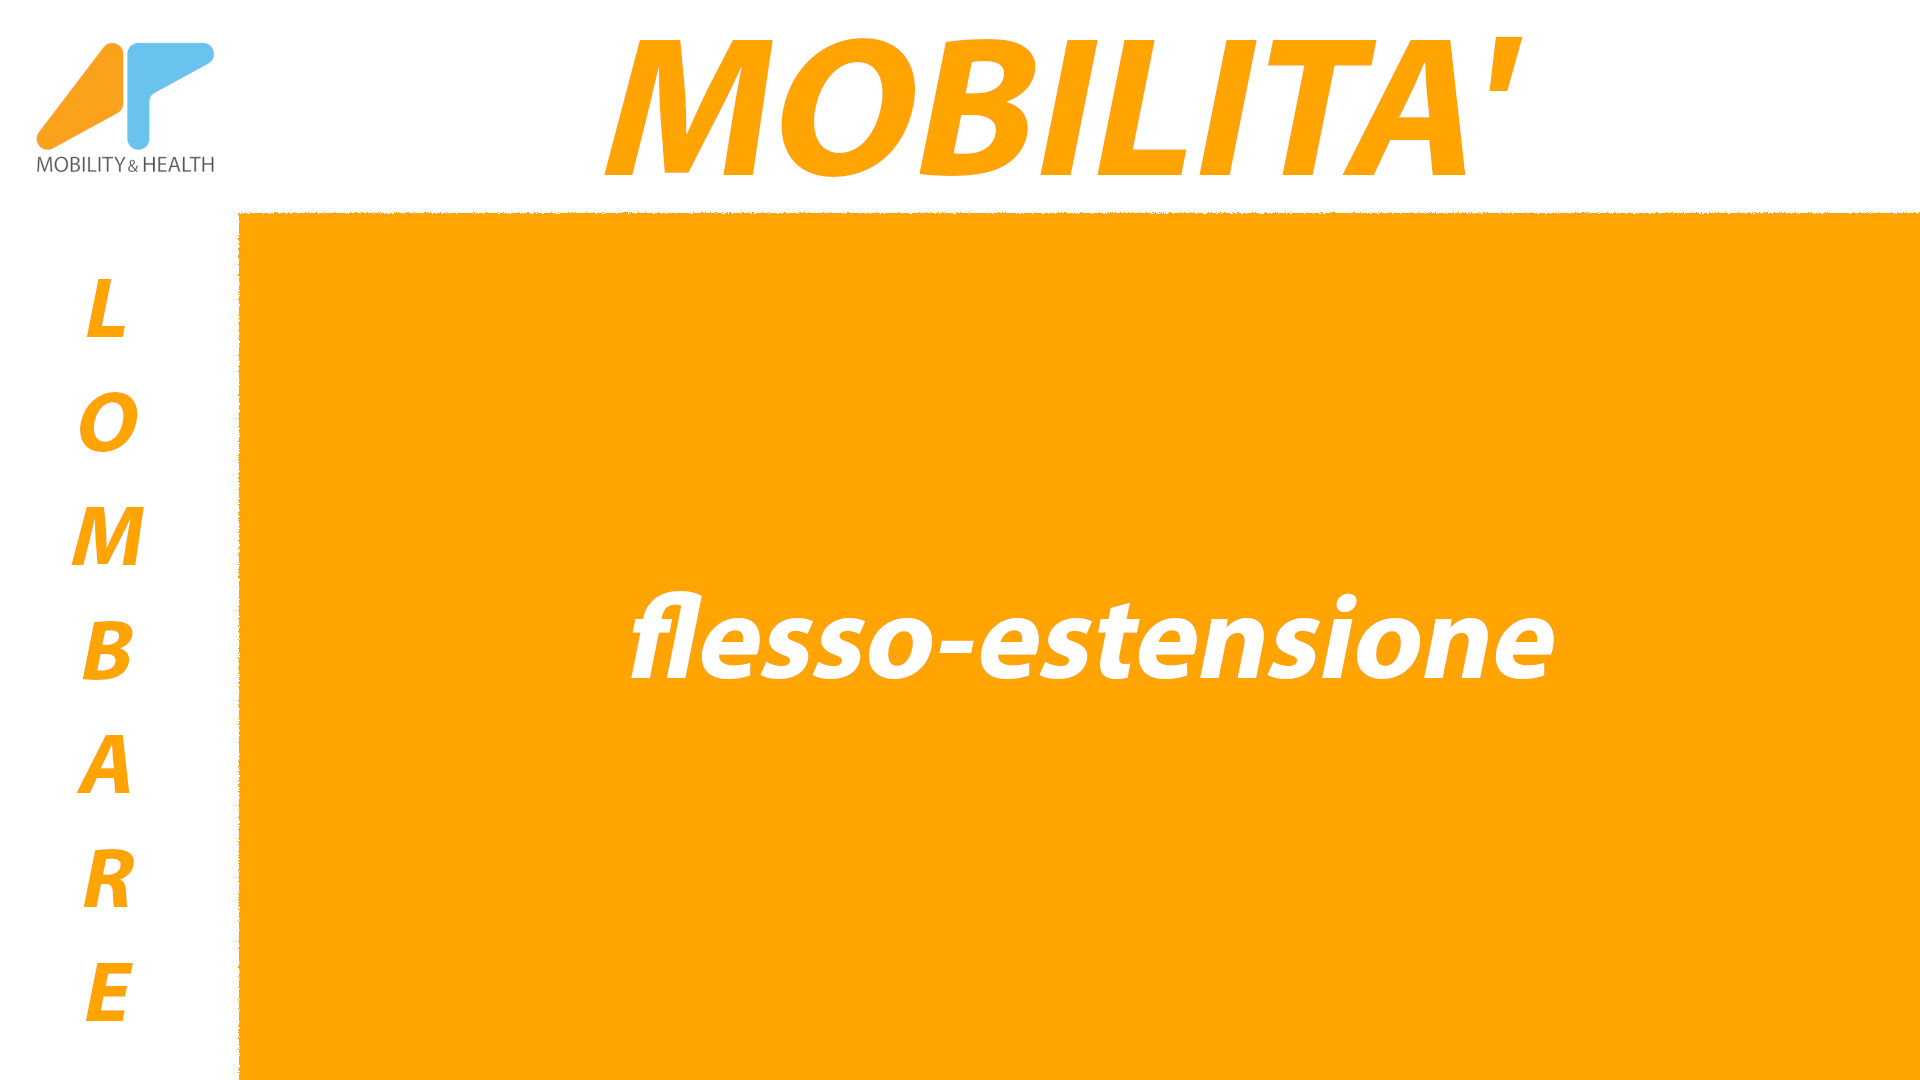 Mobilita-lombare-flesso-estensione Alessandro Paoluzzi Fisioterapista Ud